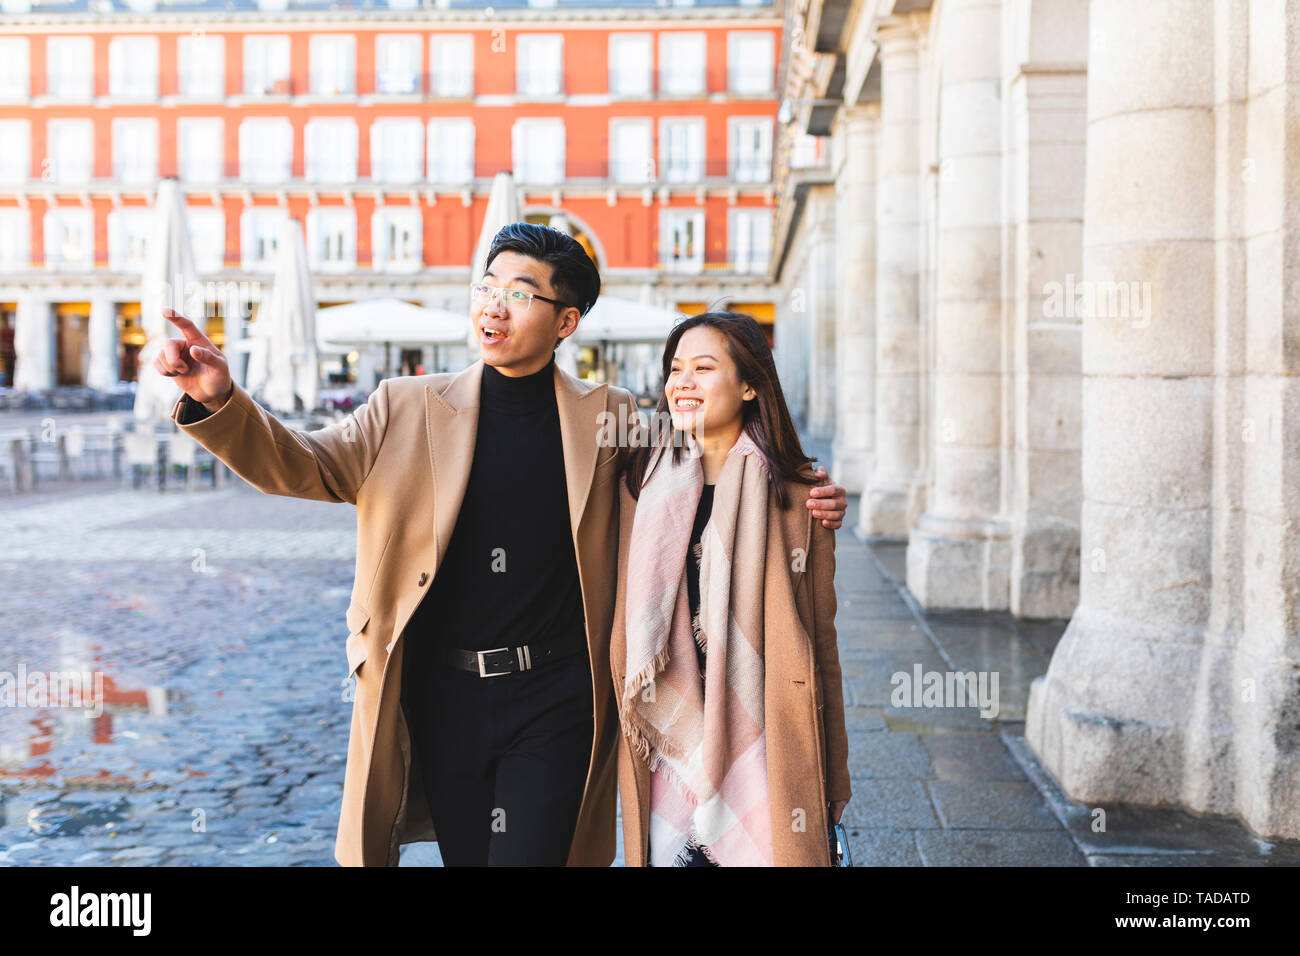 Espagne, Madrid, jeune couple à la découverte de la ville Banque D'Images